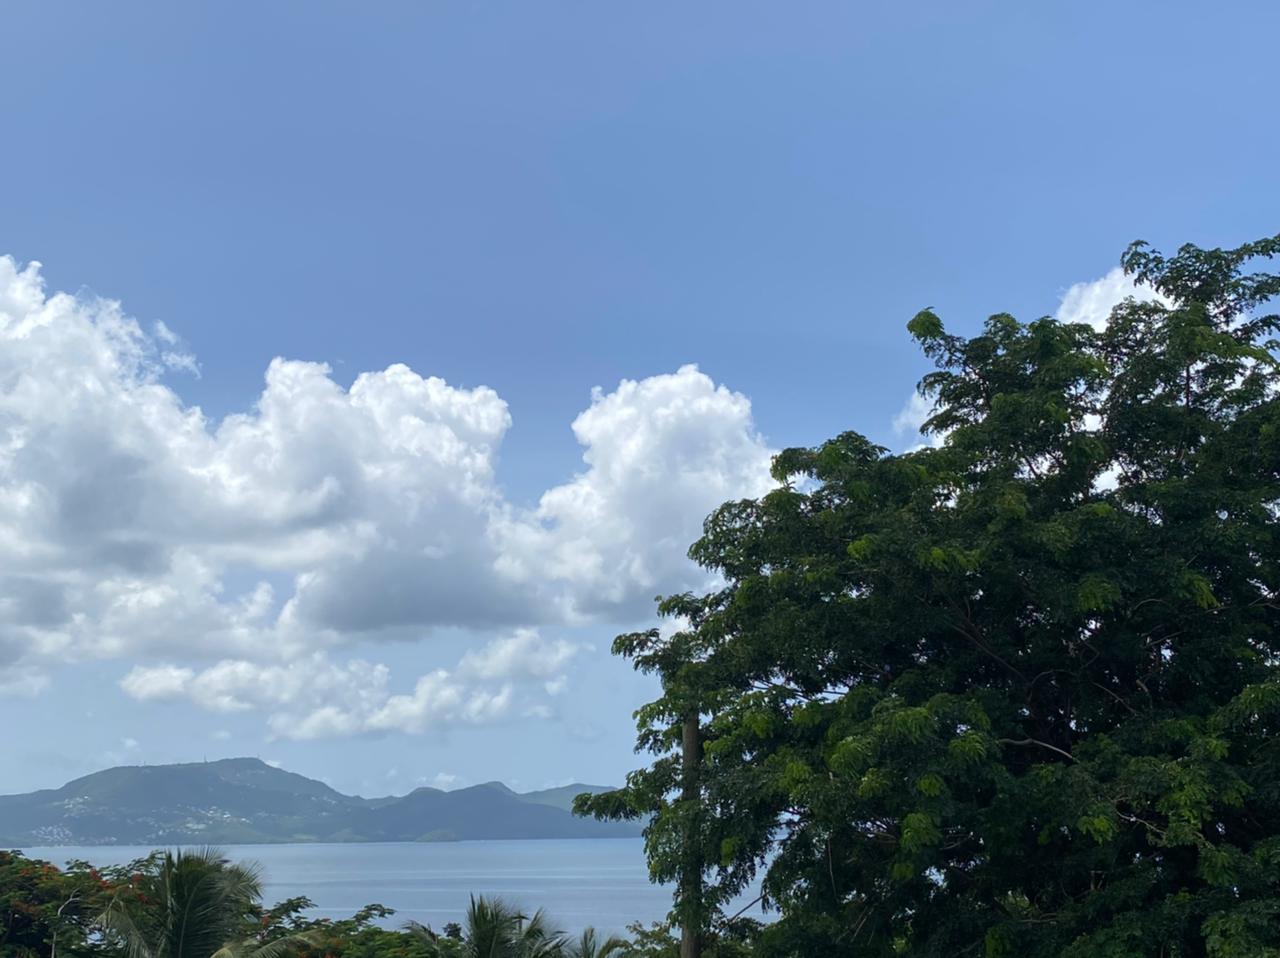     La Martinique n'est plus en vigilance jaune : le risque de fortes pluies s'éloigne

